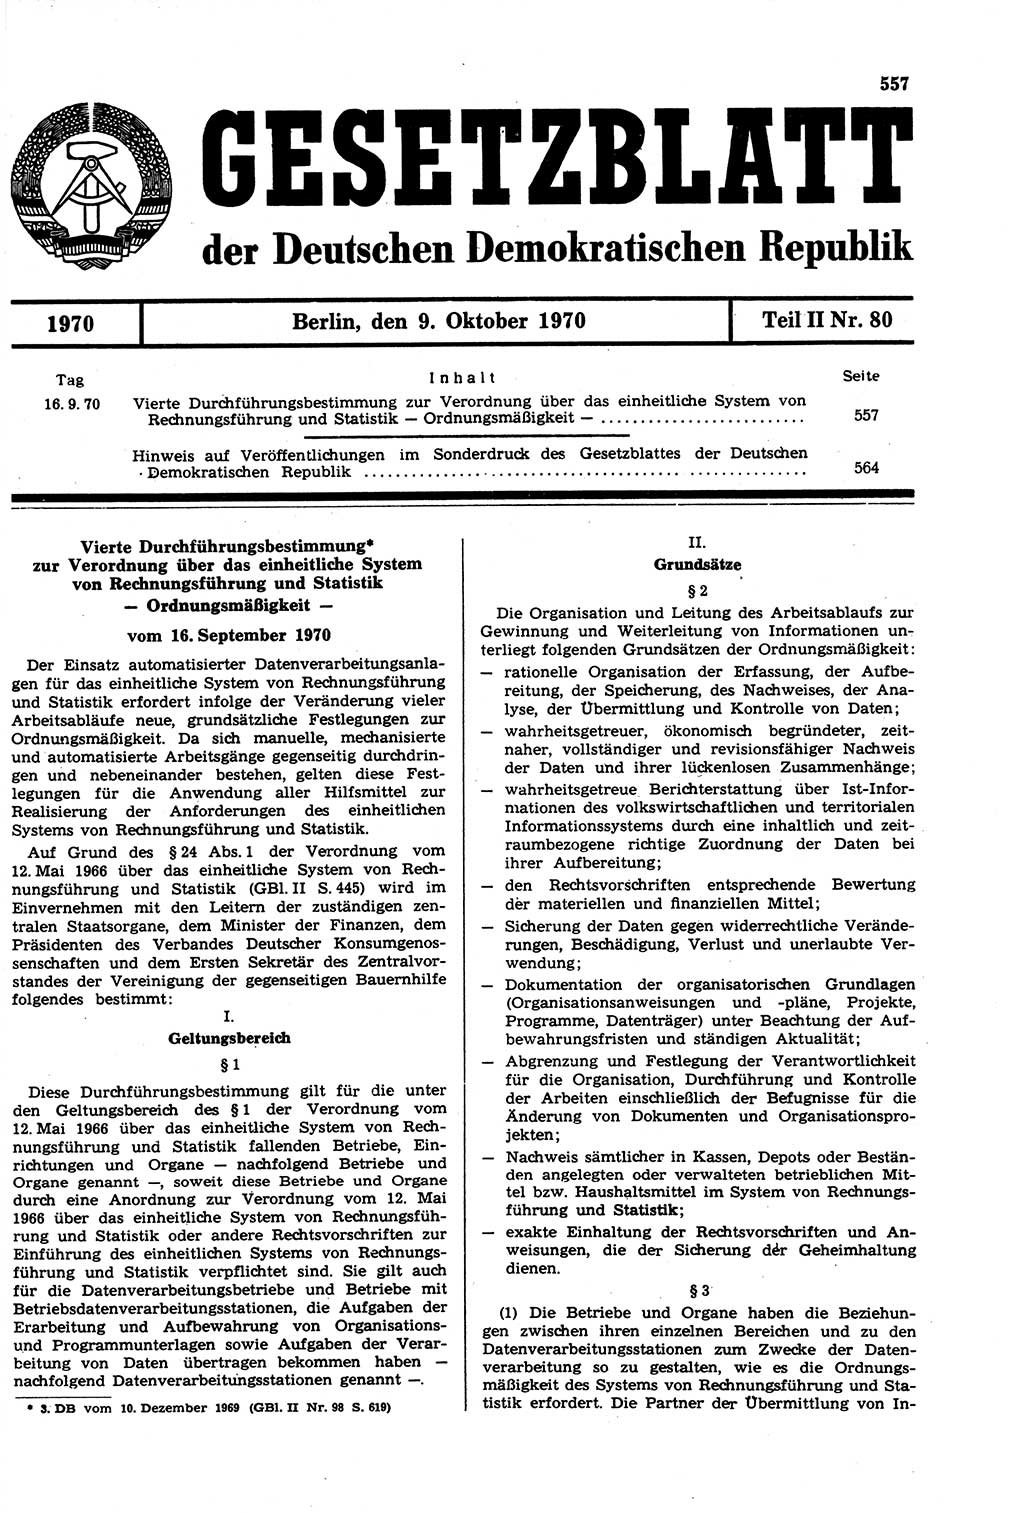 Gesetzblatt (GBl.) der Deutschen Demokratischen Republik (DDR) Teil ⅠⅠ 1970, Seite 557 (GBl. DDR ⅠⅠ 1970, S. 557)